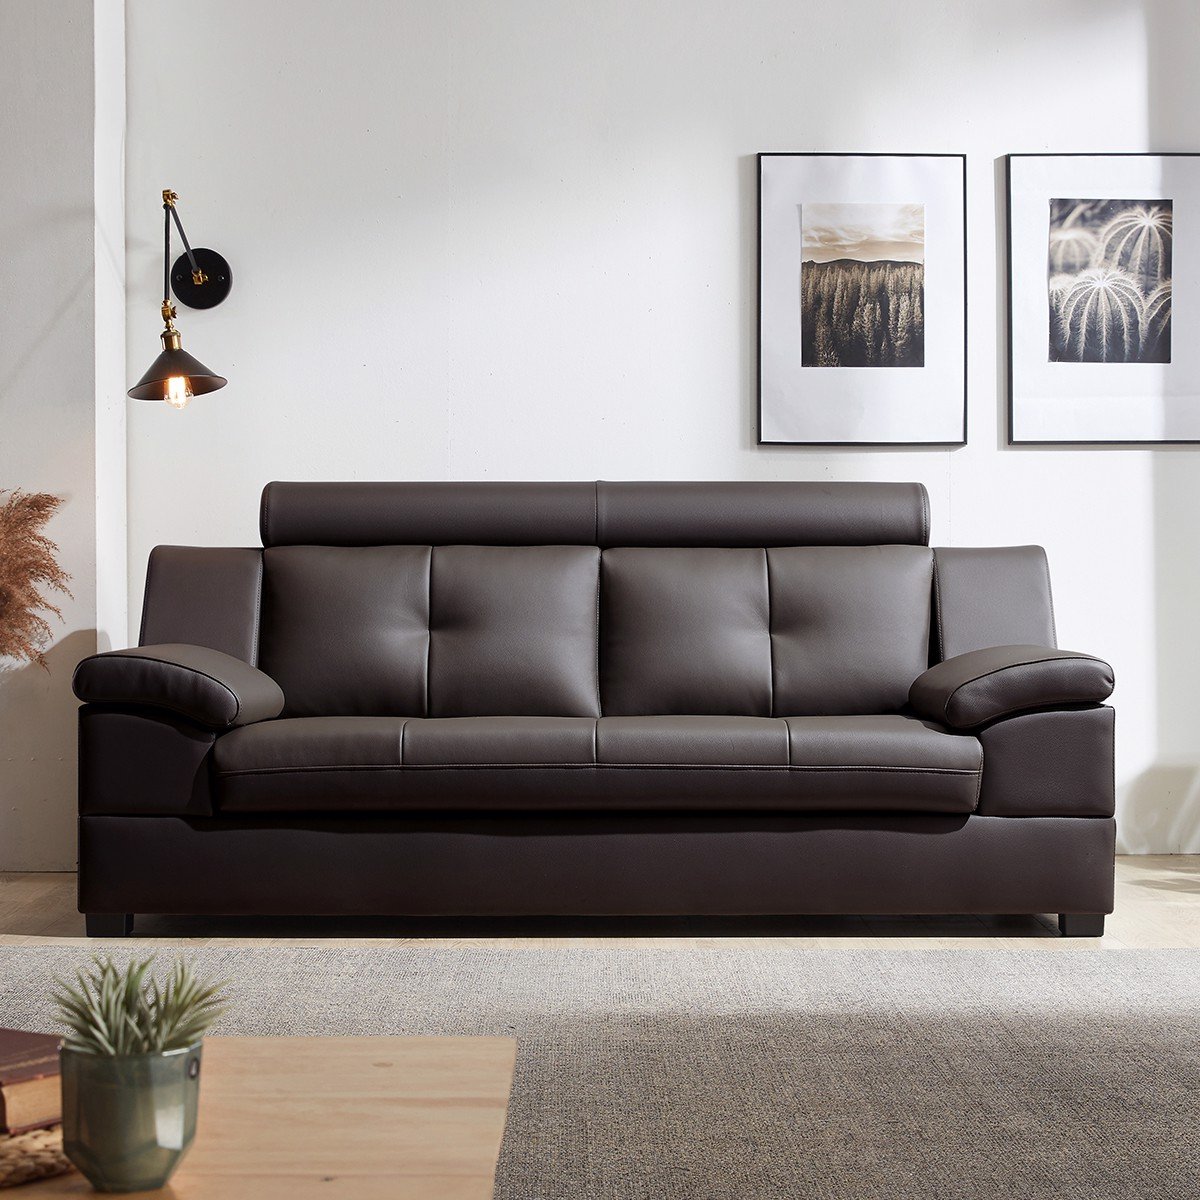 Cách lắp đặt vỏ bọc ghế sofa của bạn